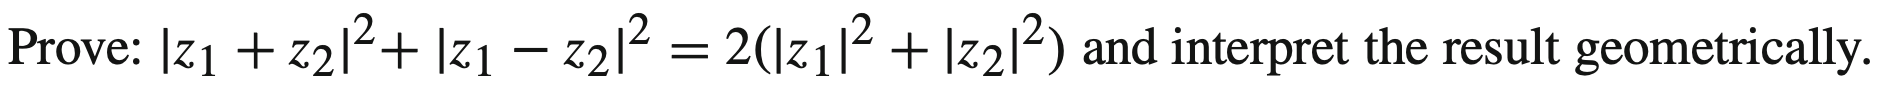 Prove: 21+z212+ |21 â€“ 2212 = 2(12112 + |z212) and interpret the result geometrically.